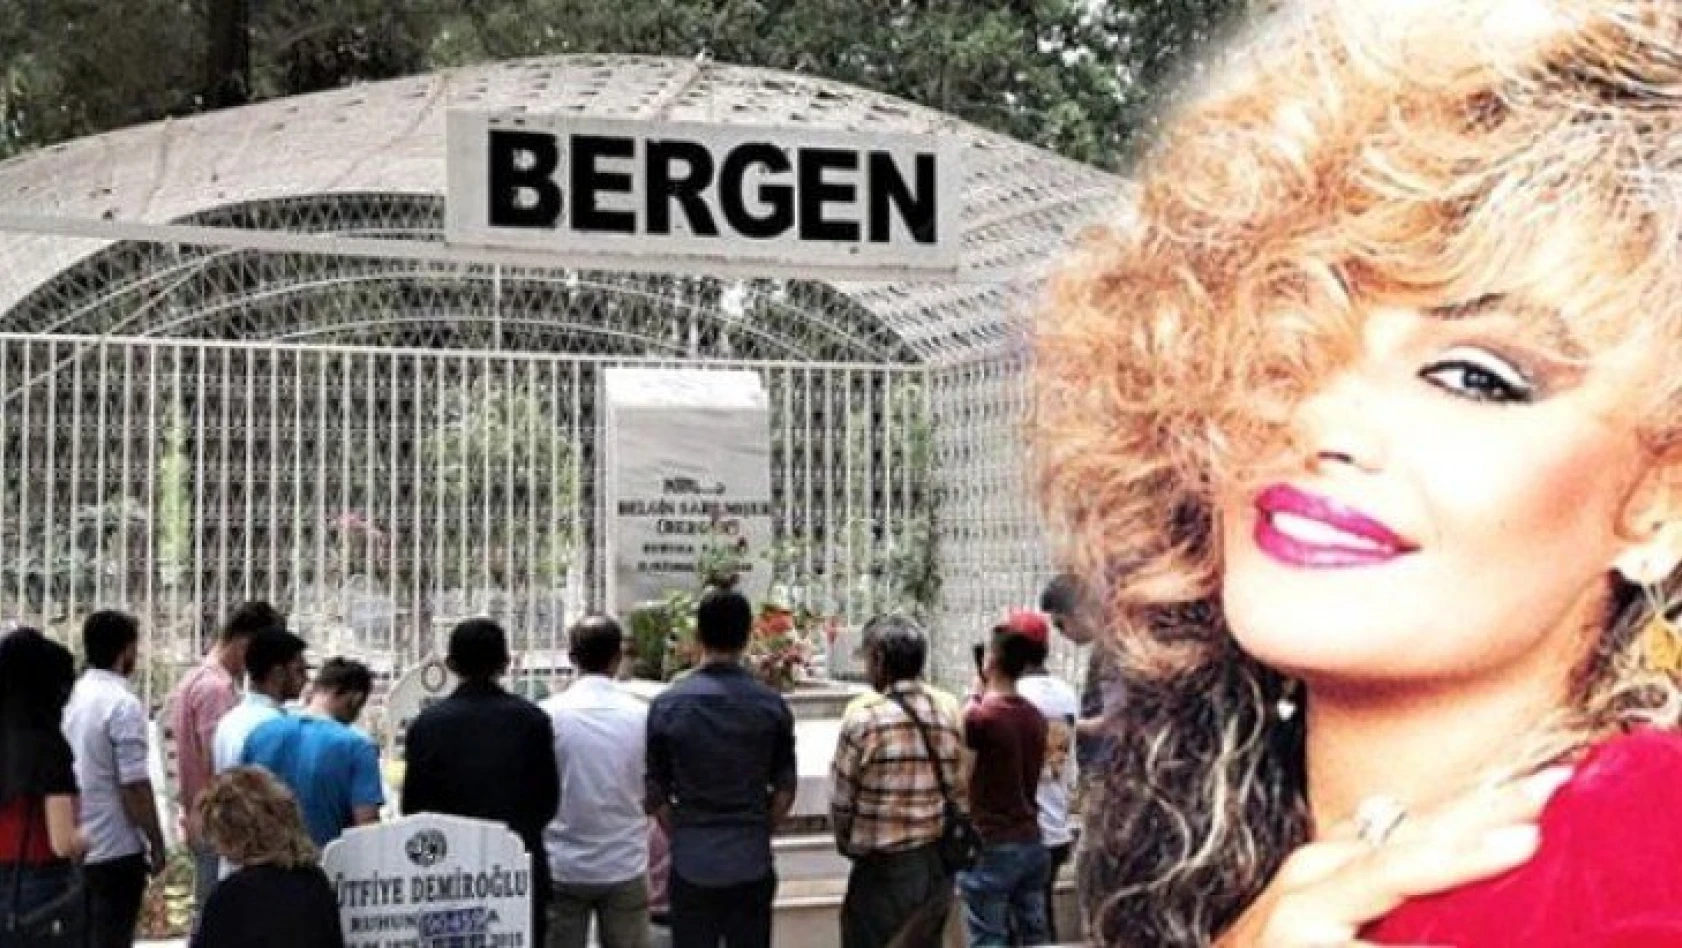 Bergen'in mezarının kafes içinde olma nedeni yürek yaktı